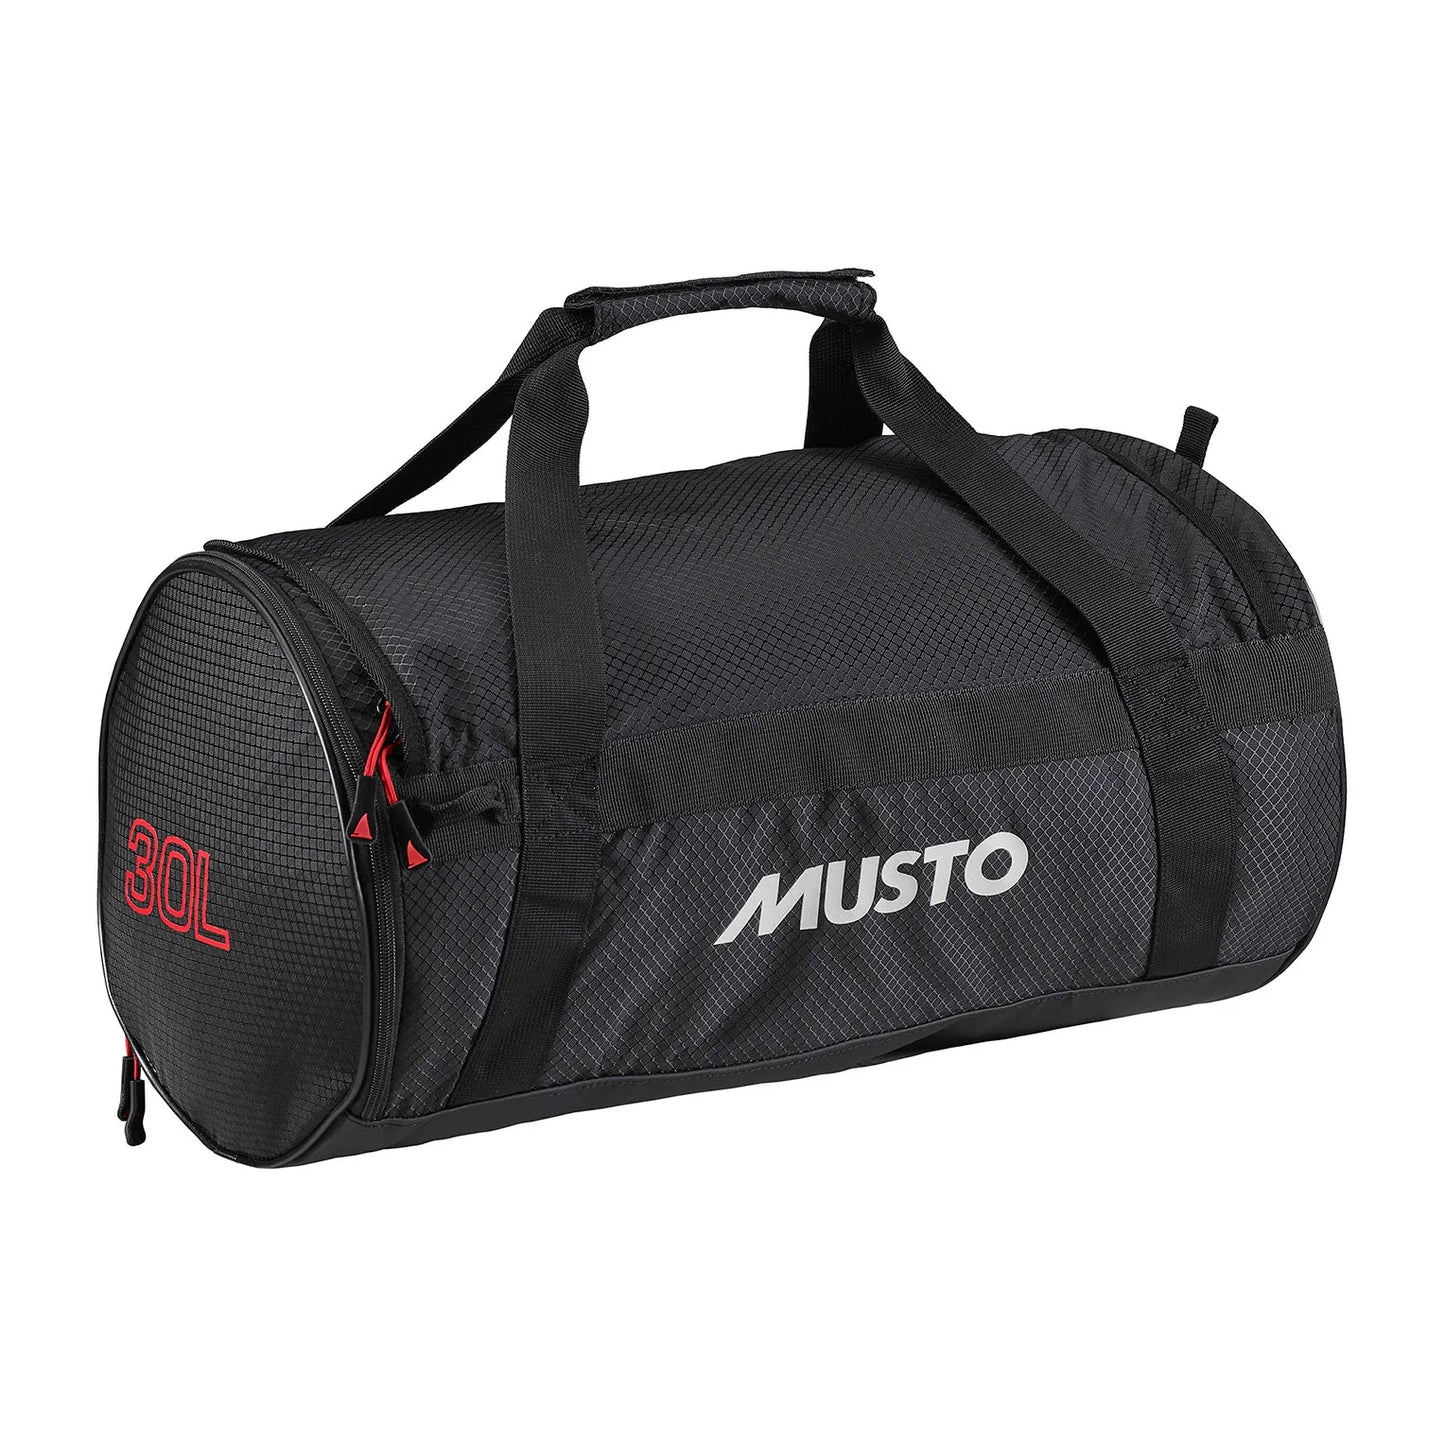 30 L Musto Duffel bag, Black